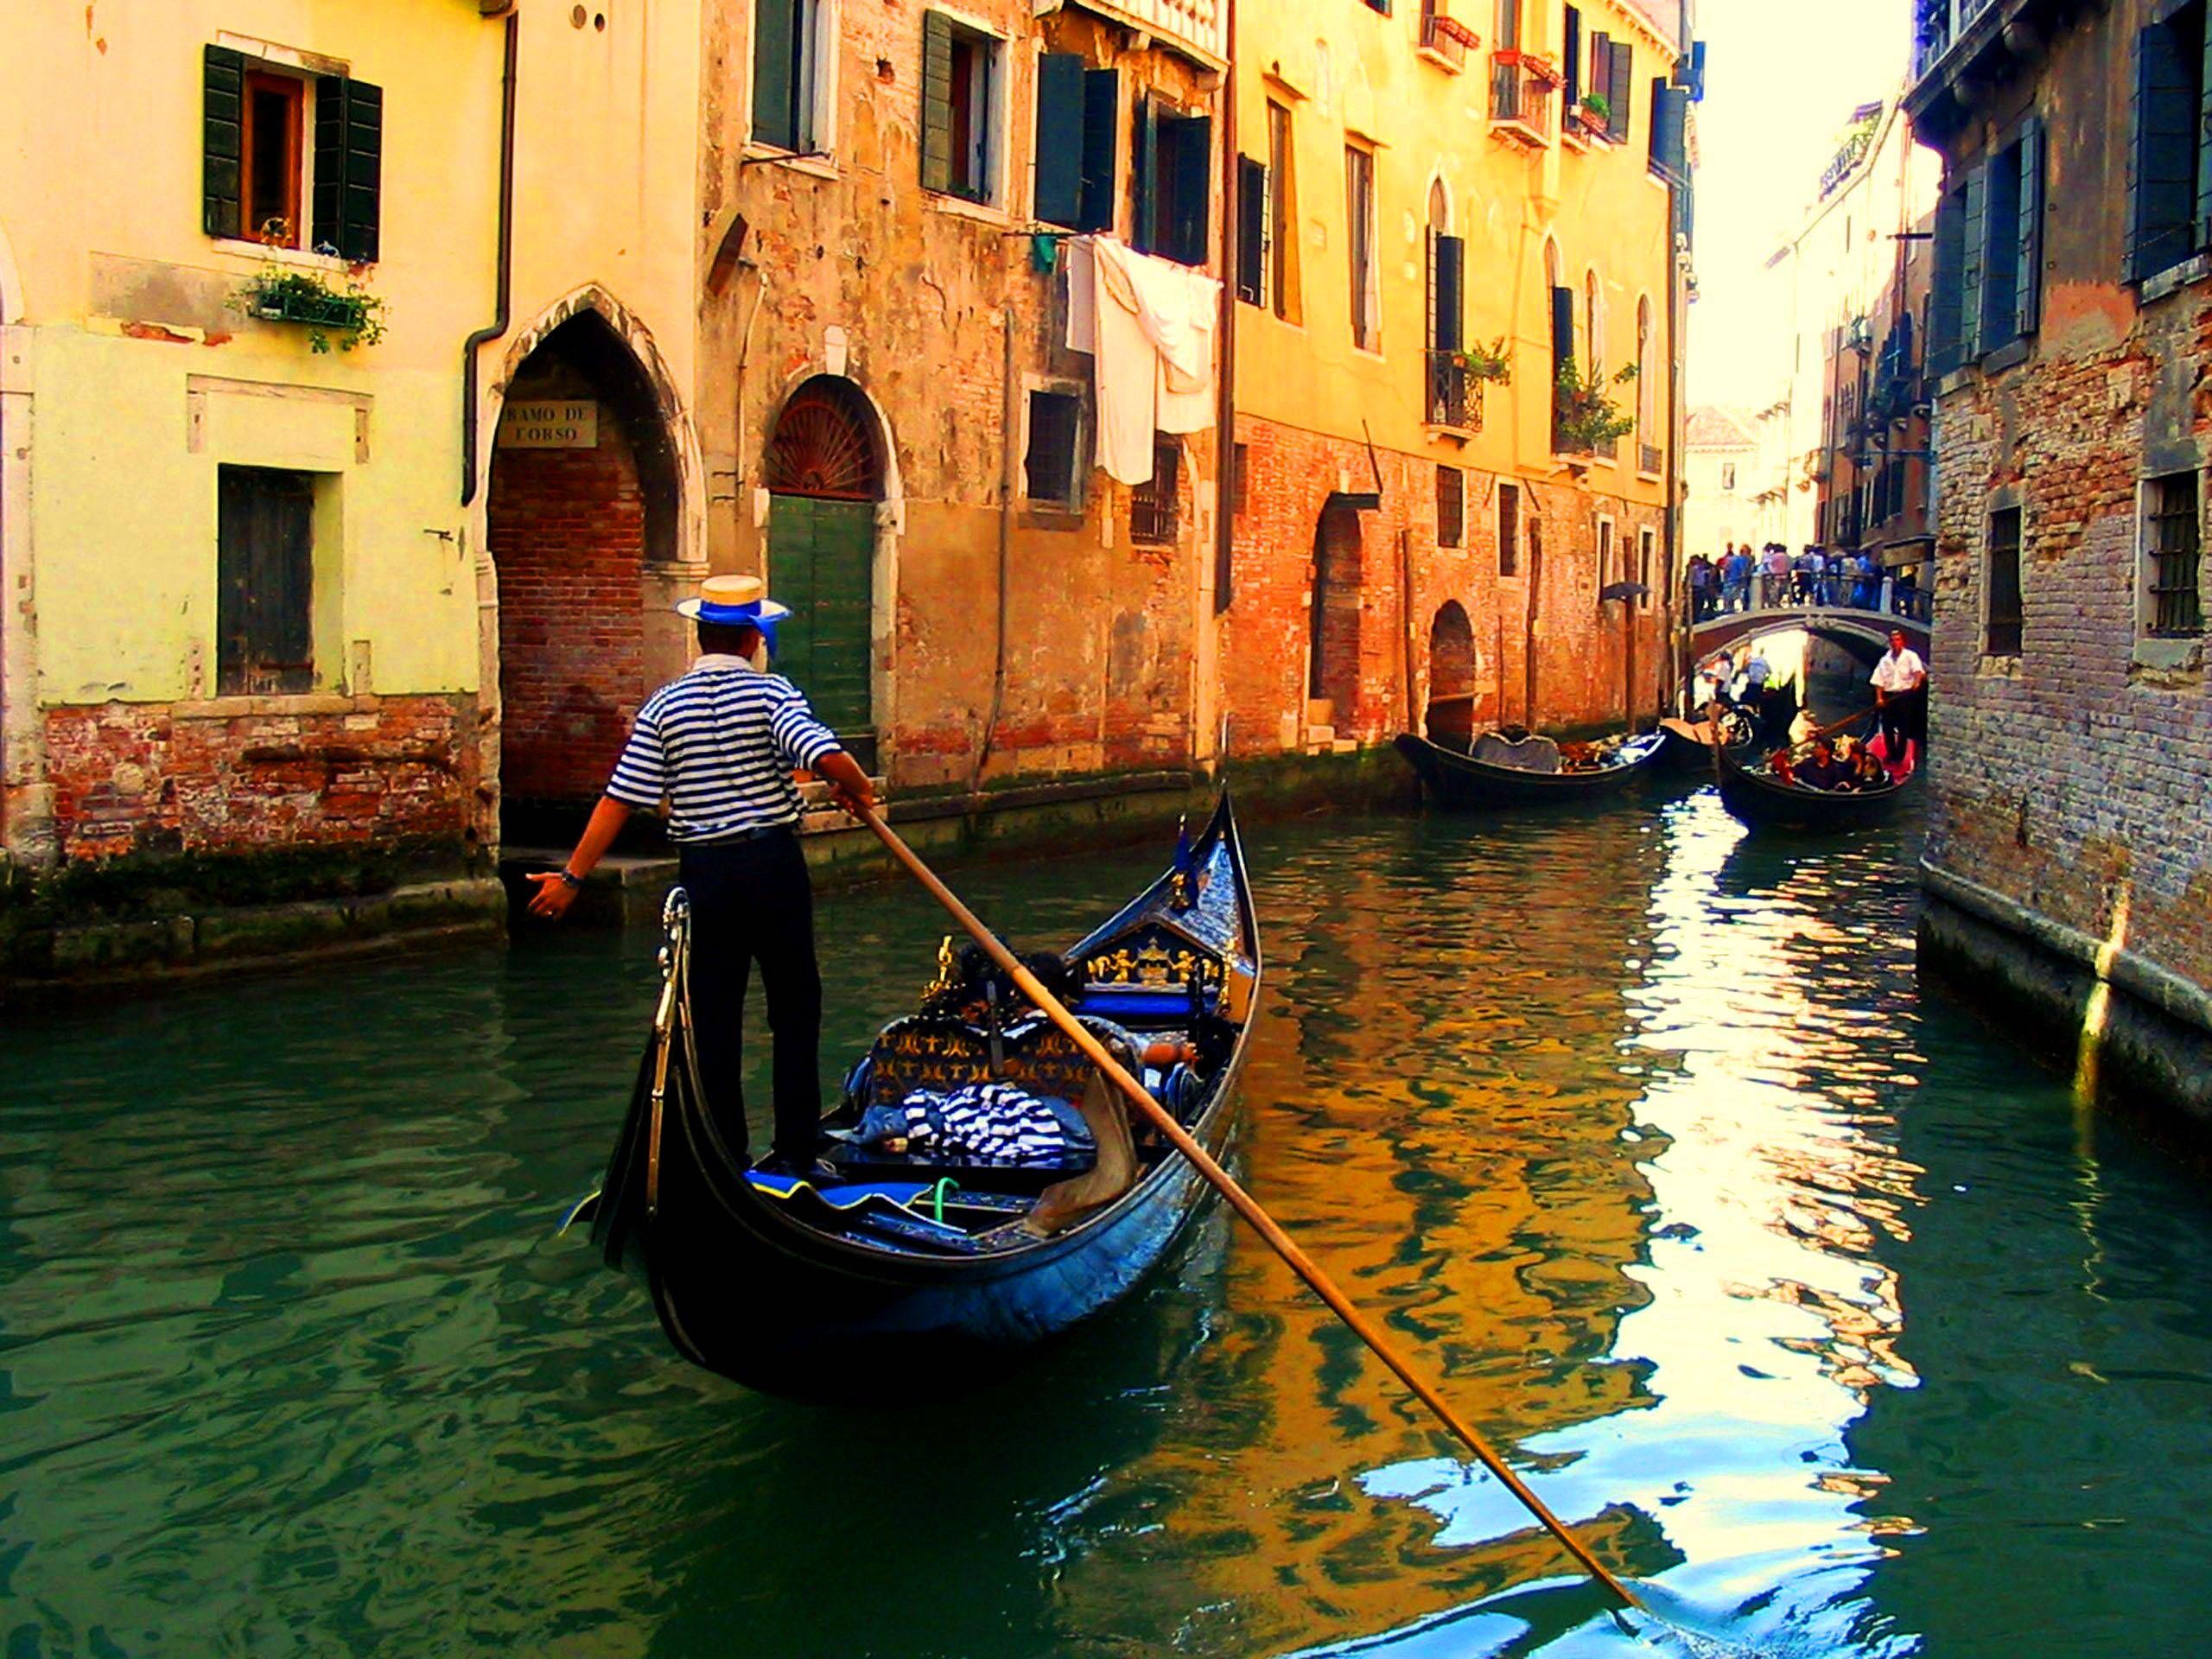 2560x1920px Amazing wallpaper of Venecia 18